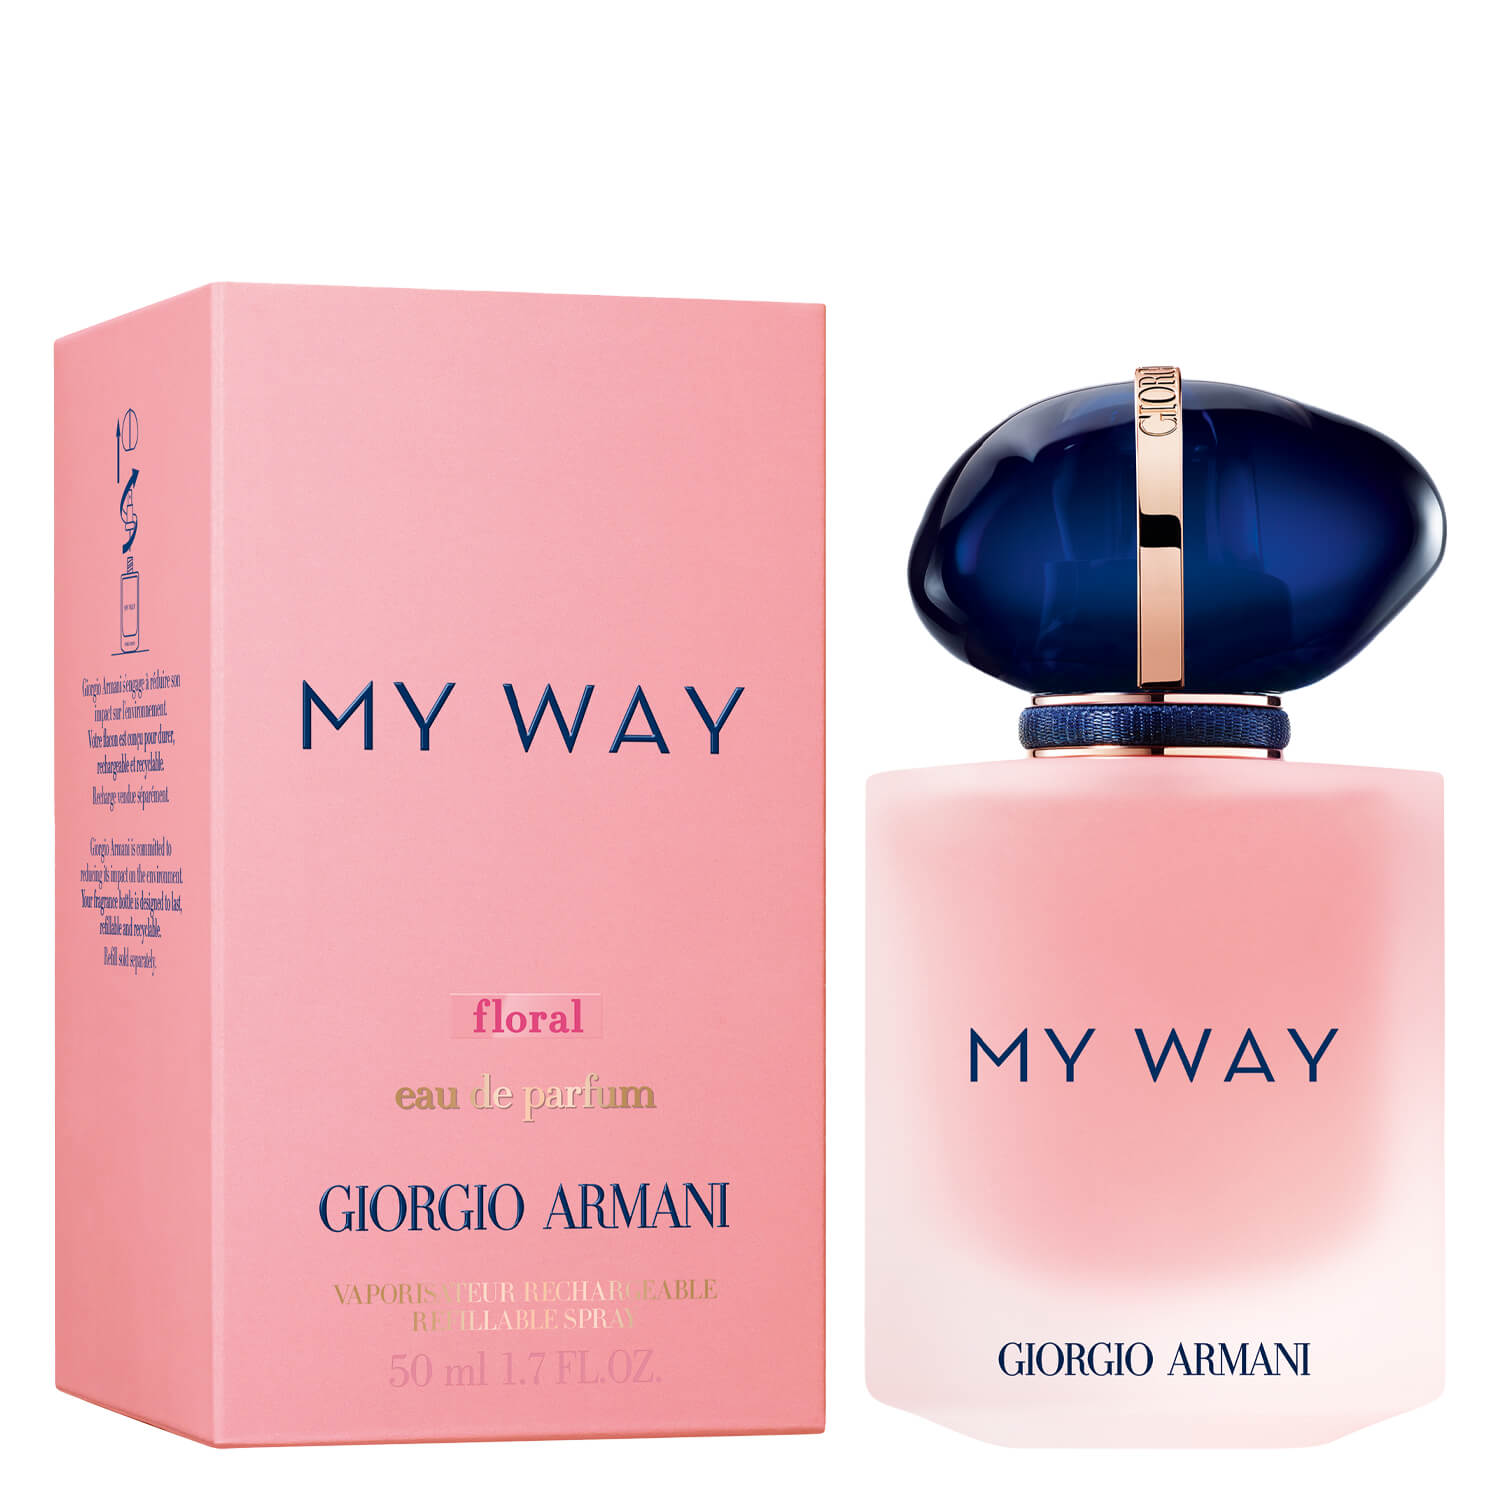 Giorgio Armani MY WAY - Floral Eau de Parfum 